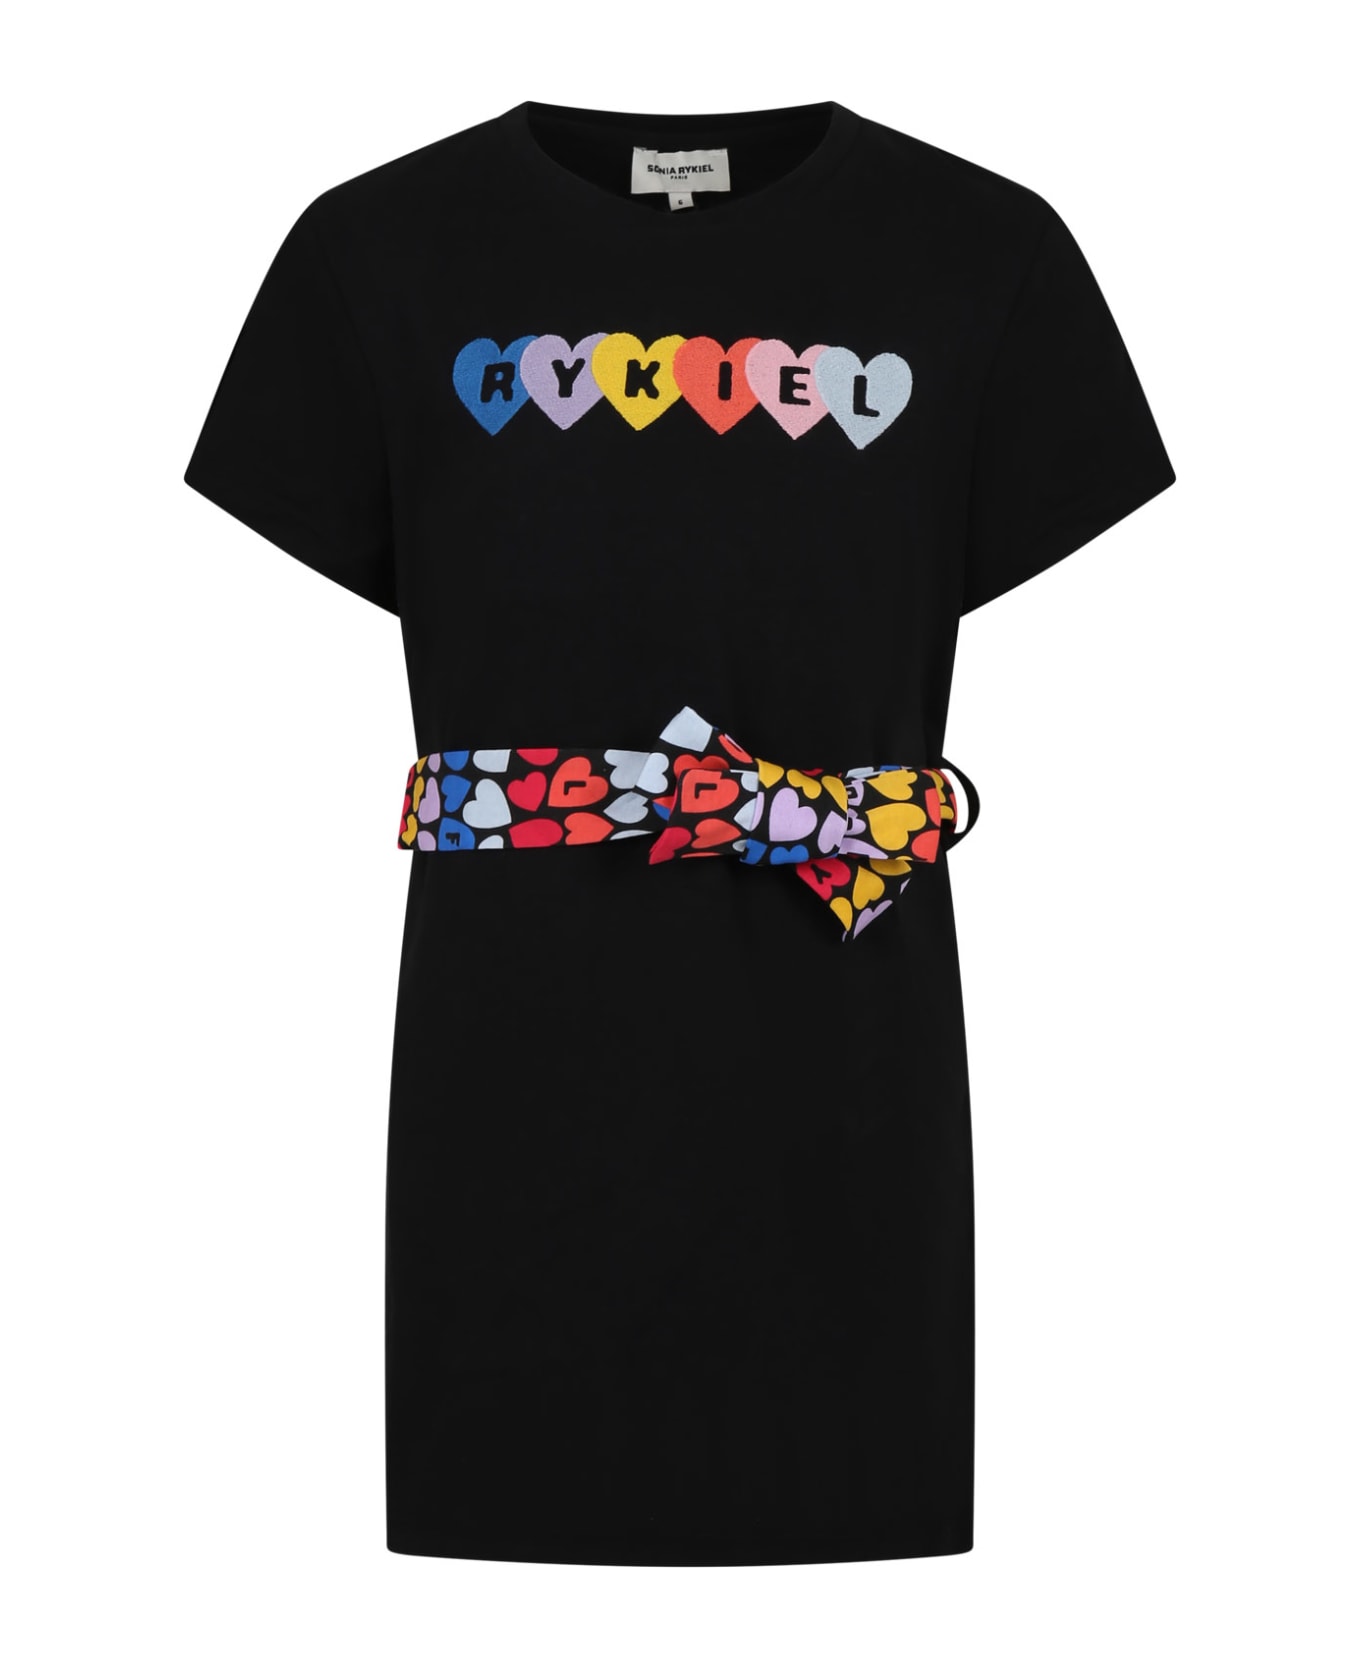 Rykiel Enfant Black Dress For Girl With Multicolor Belt And Logo - Black